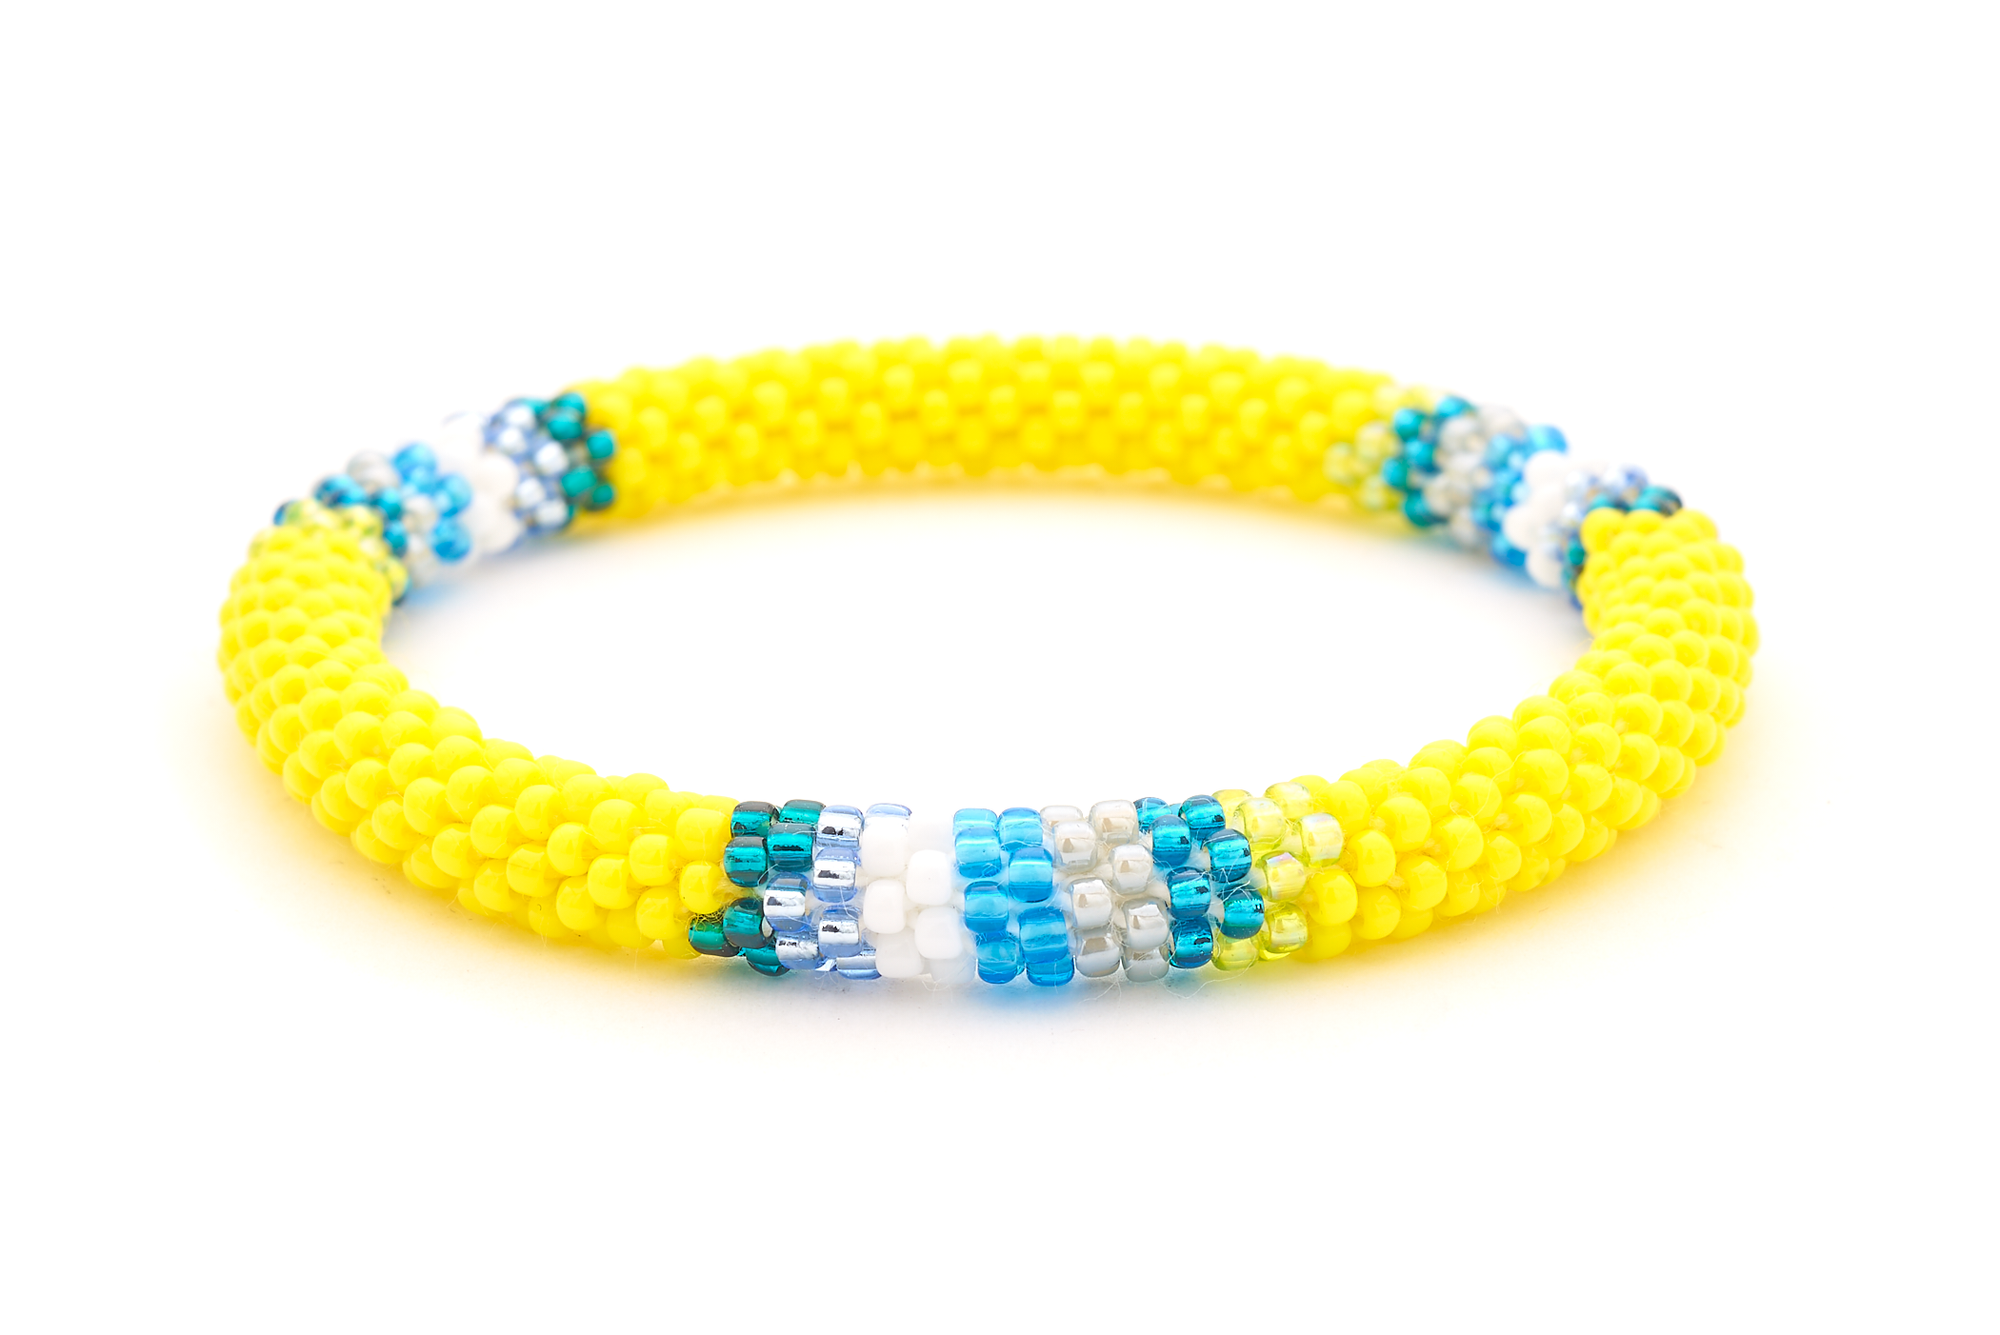 Sashka Co. Extended 8" Bracelet Yellow / Teal / Blue / White / Gray Sunny Shores Bracelet - Extended 8"